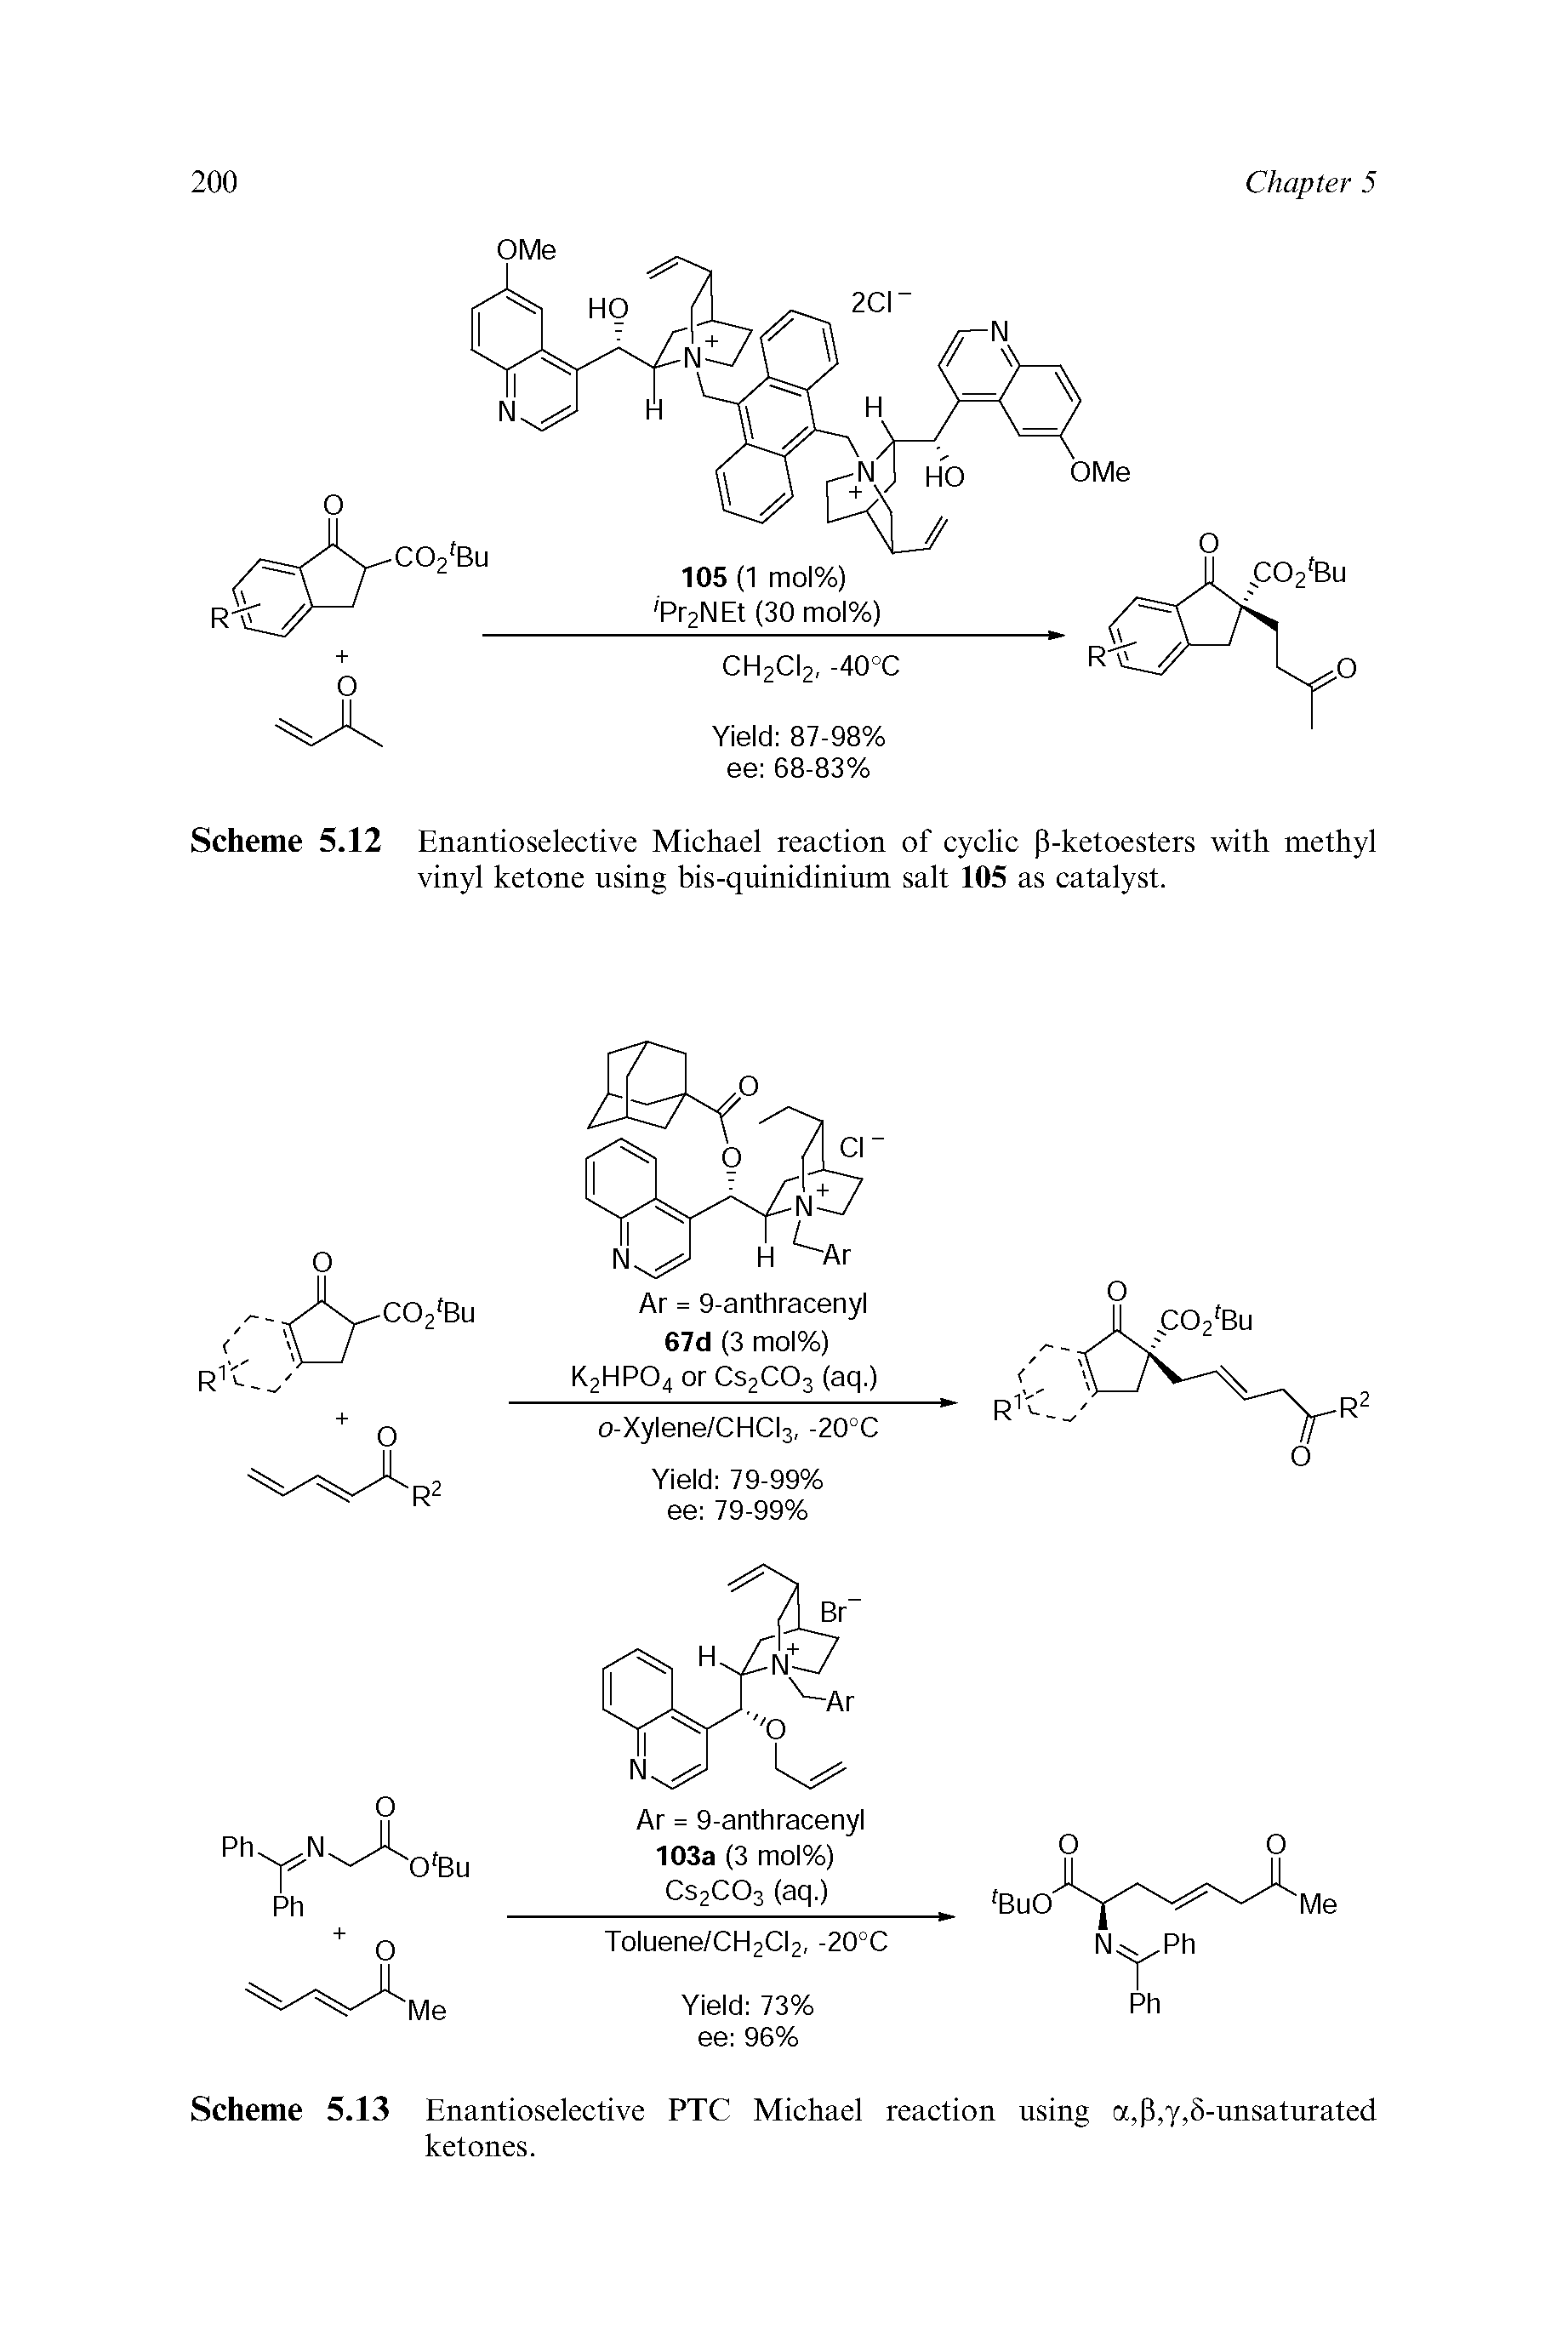 Scheme 5.13 Enantioselective PTC Michael reaction using a,p,y,5-unsaturated ketones.